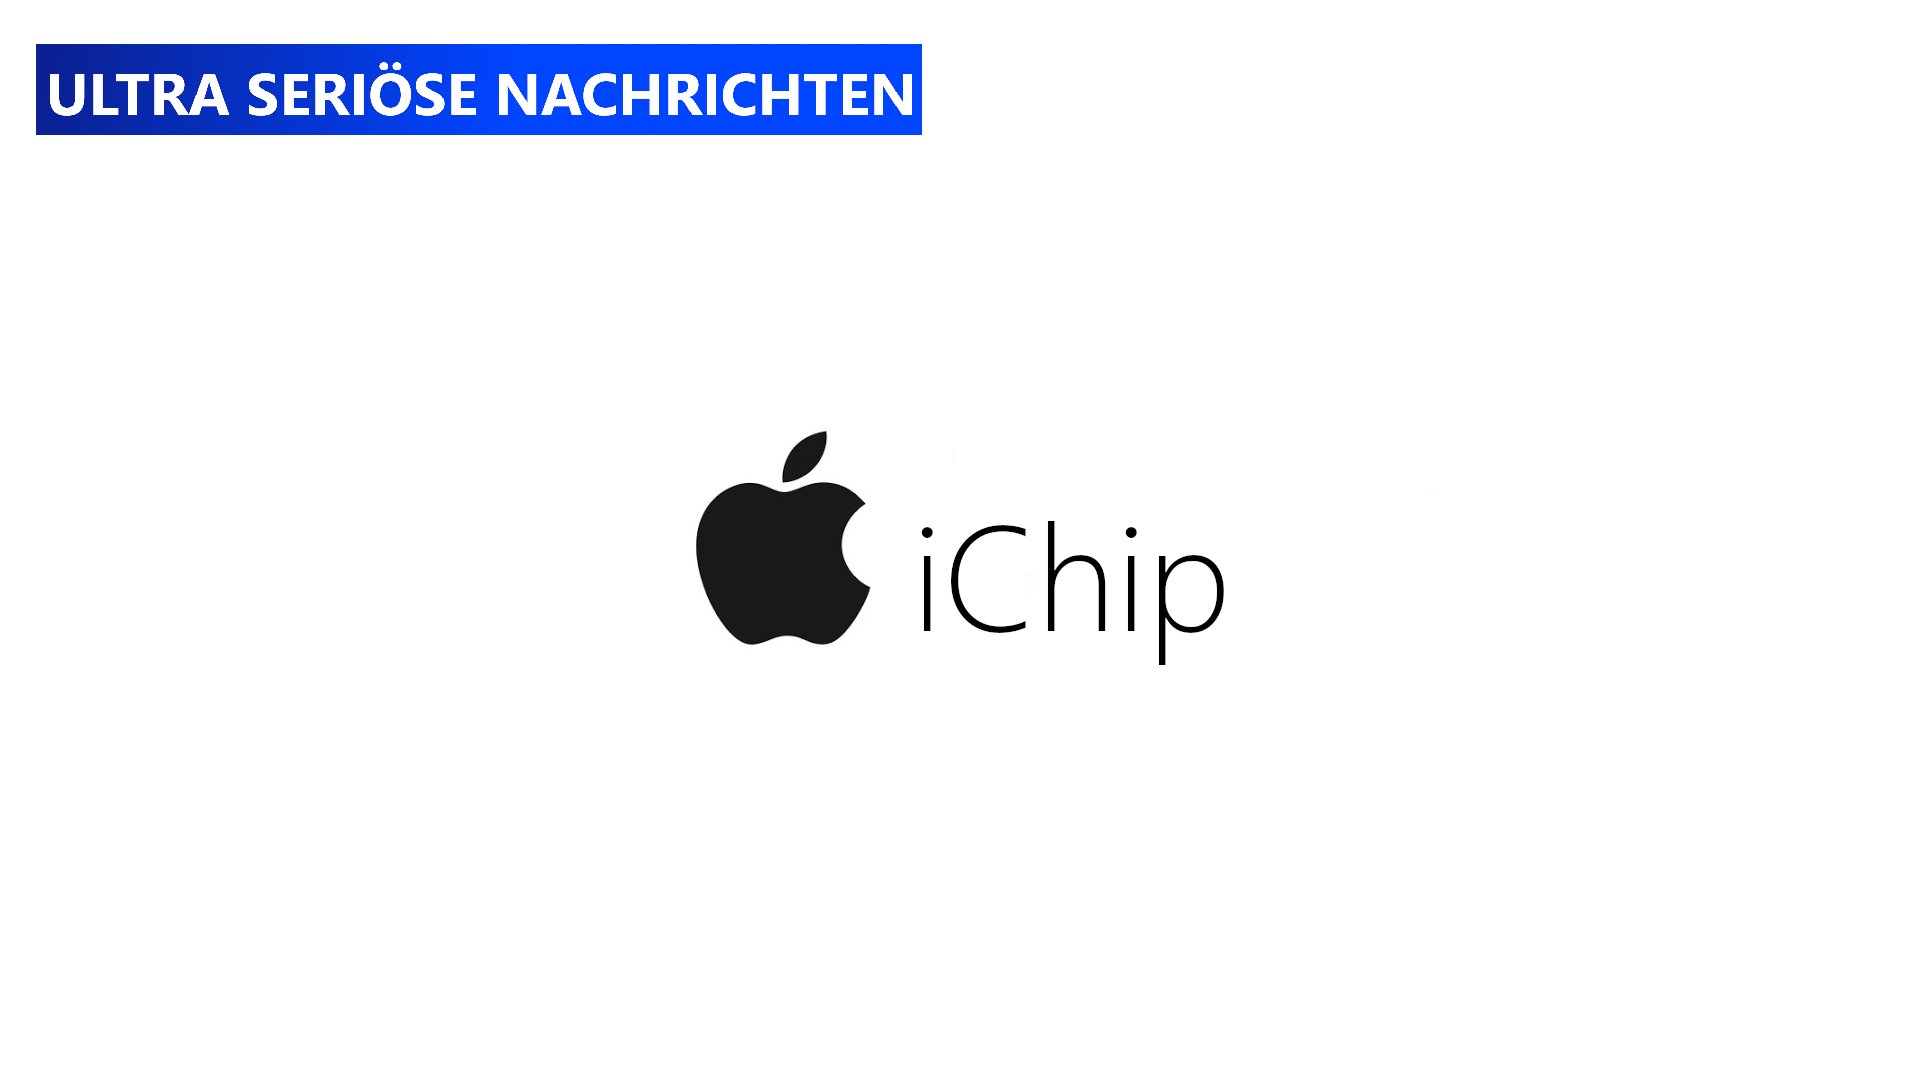 Konkurrenz für Bill Gates? Apple verkauft jetzt iChip!